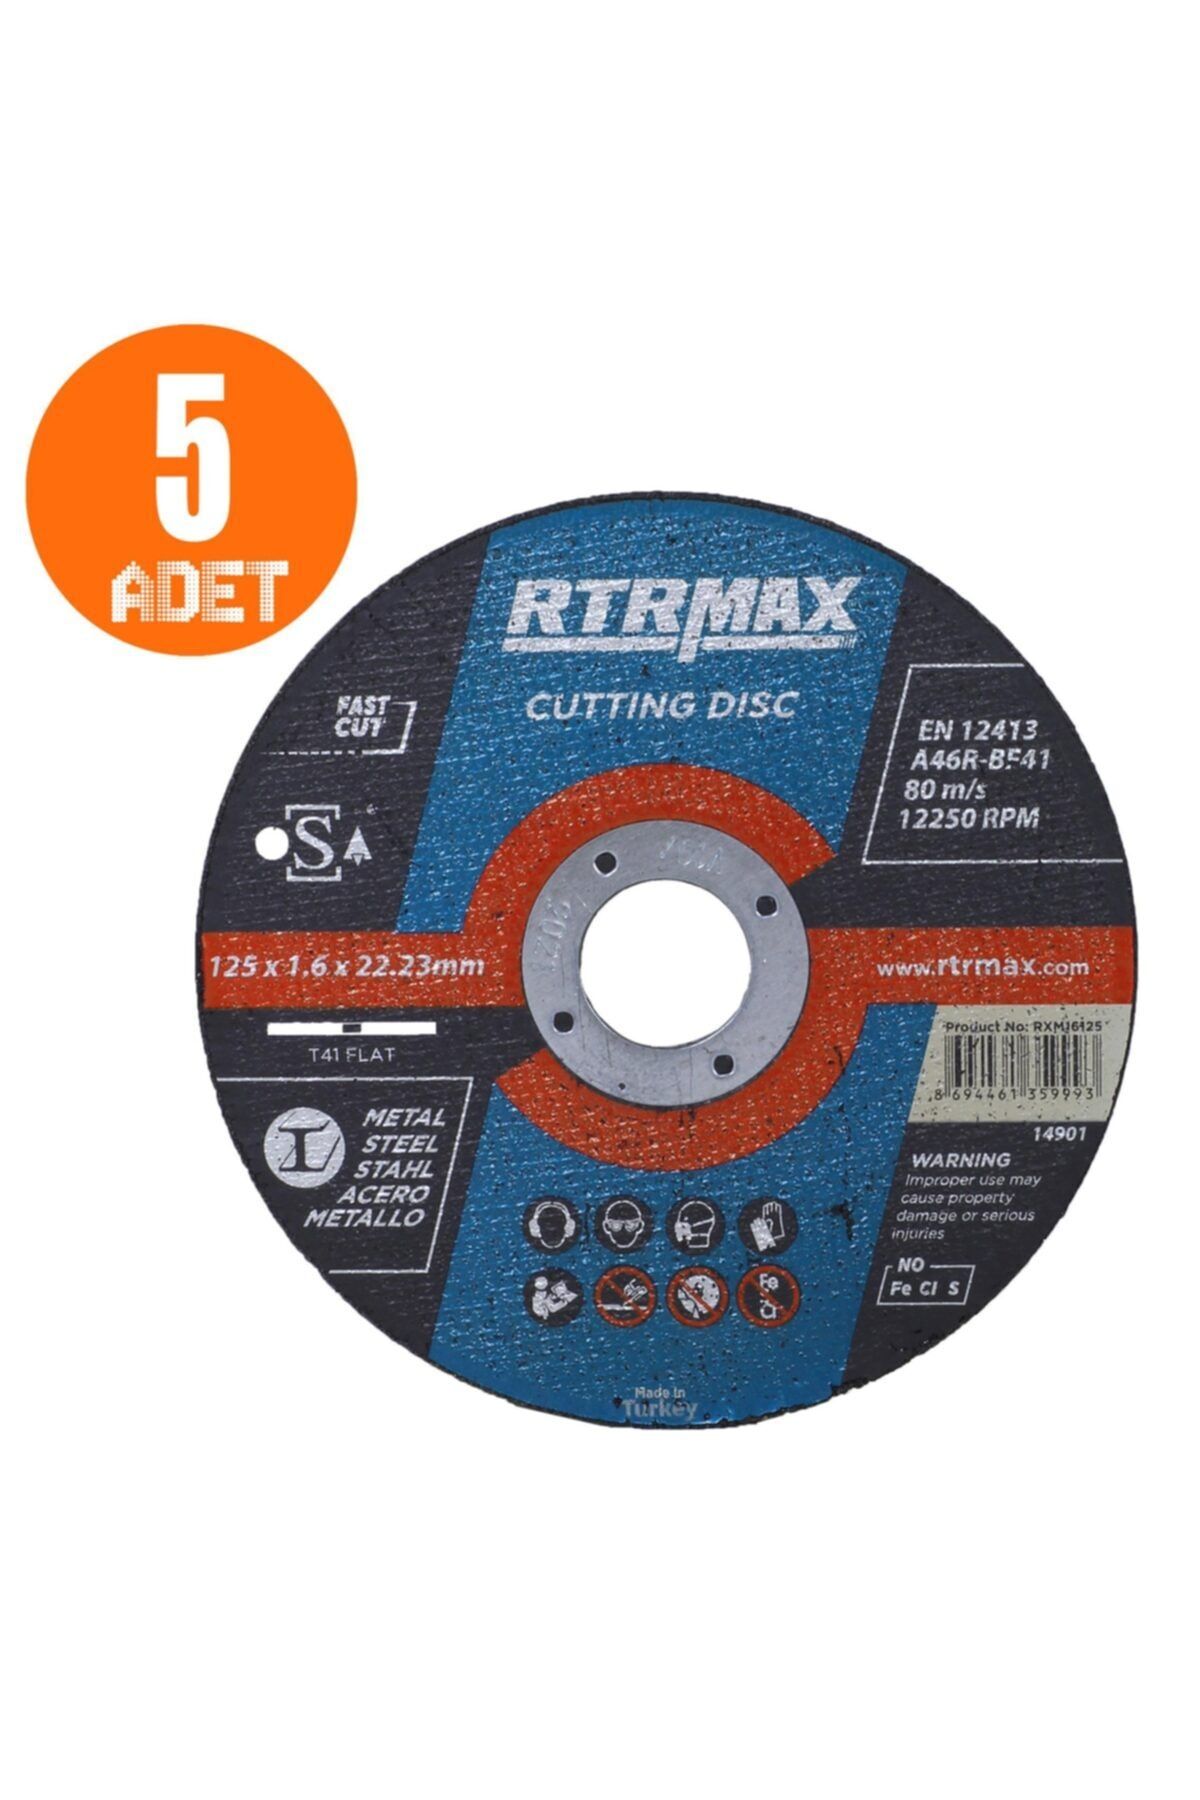 Rtrmax 5 Adet Inox Metal Kesici Taş Diski 125x1.6 Mm Spiral Avuç Içi Taşlama